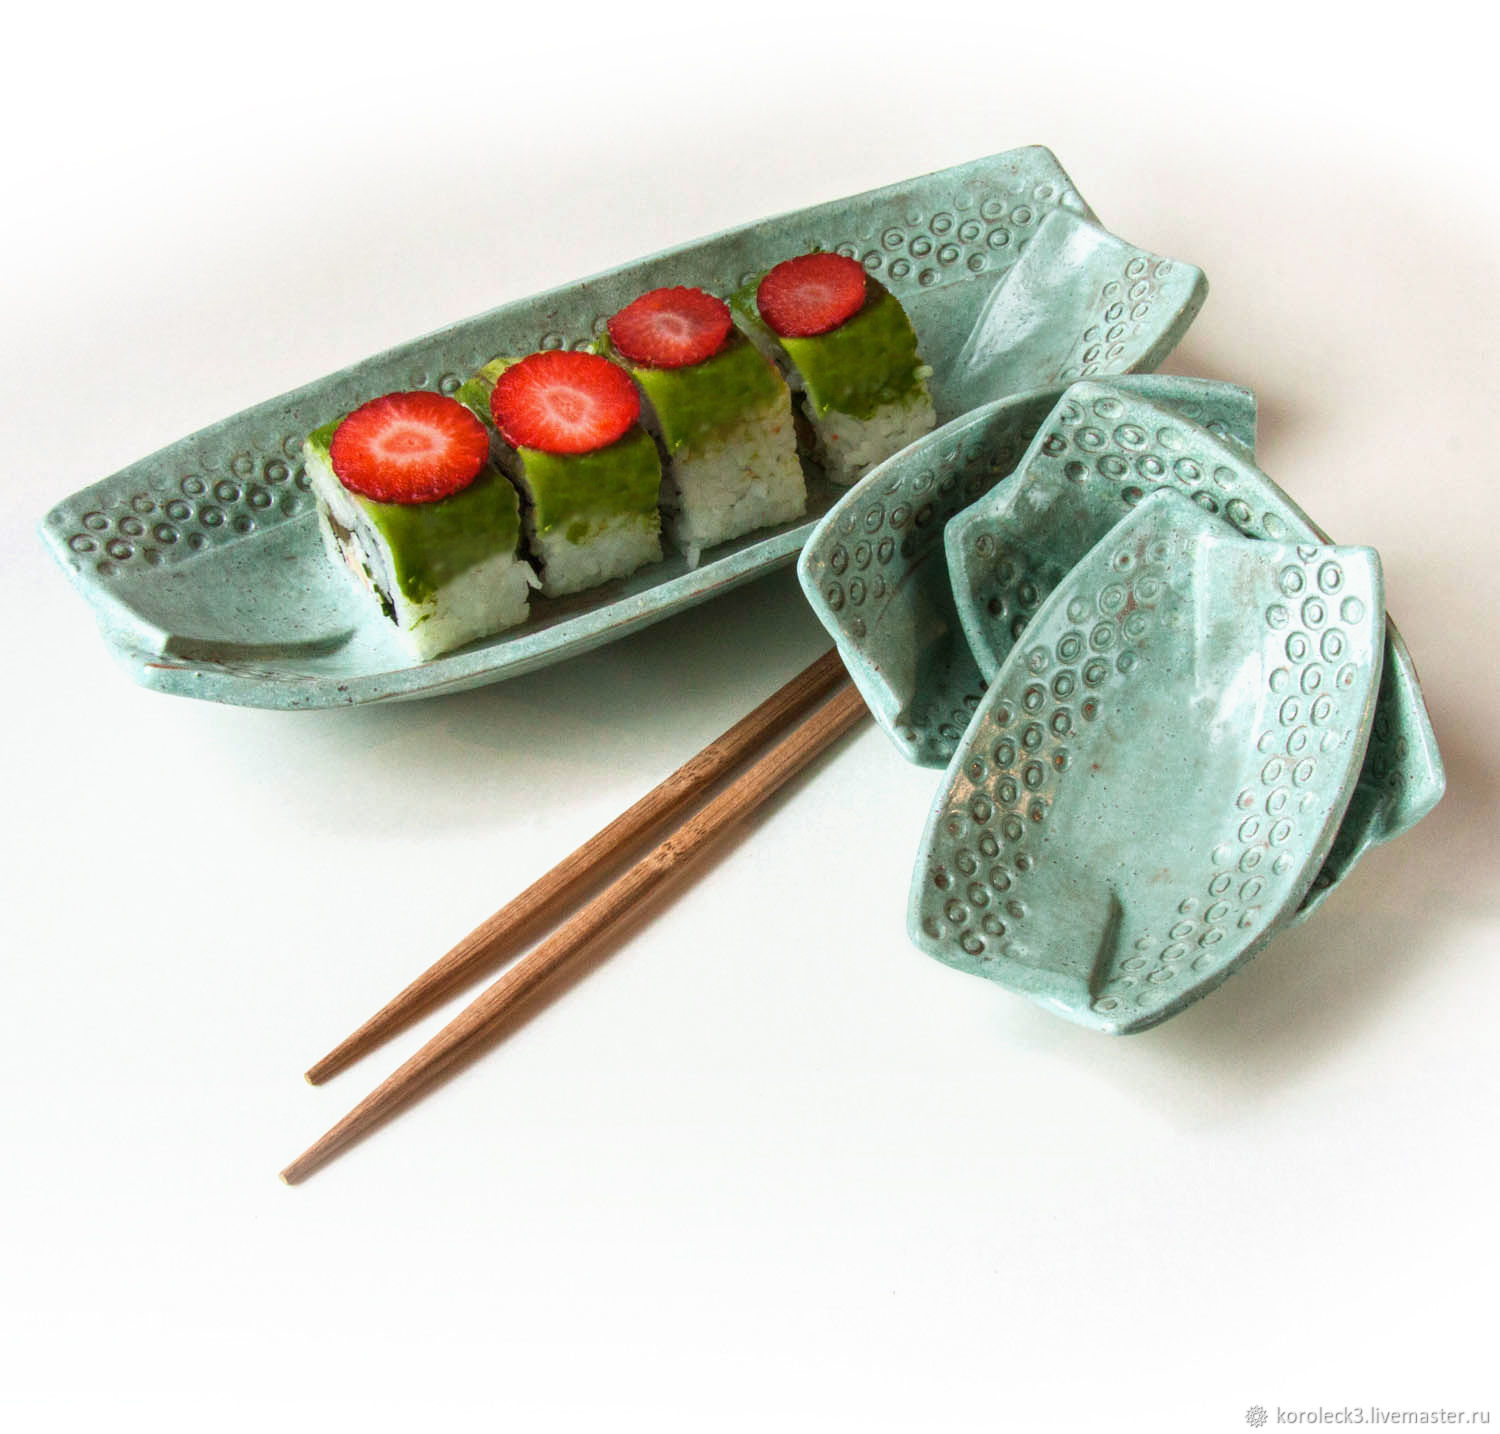 Дешевые набор для суши в минске фото 55